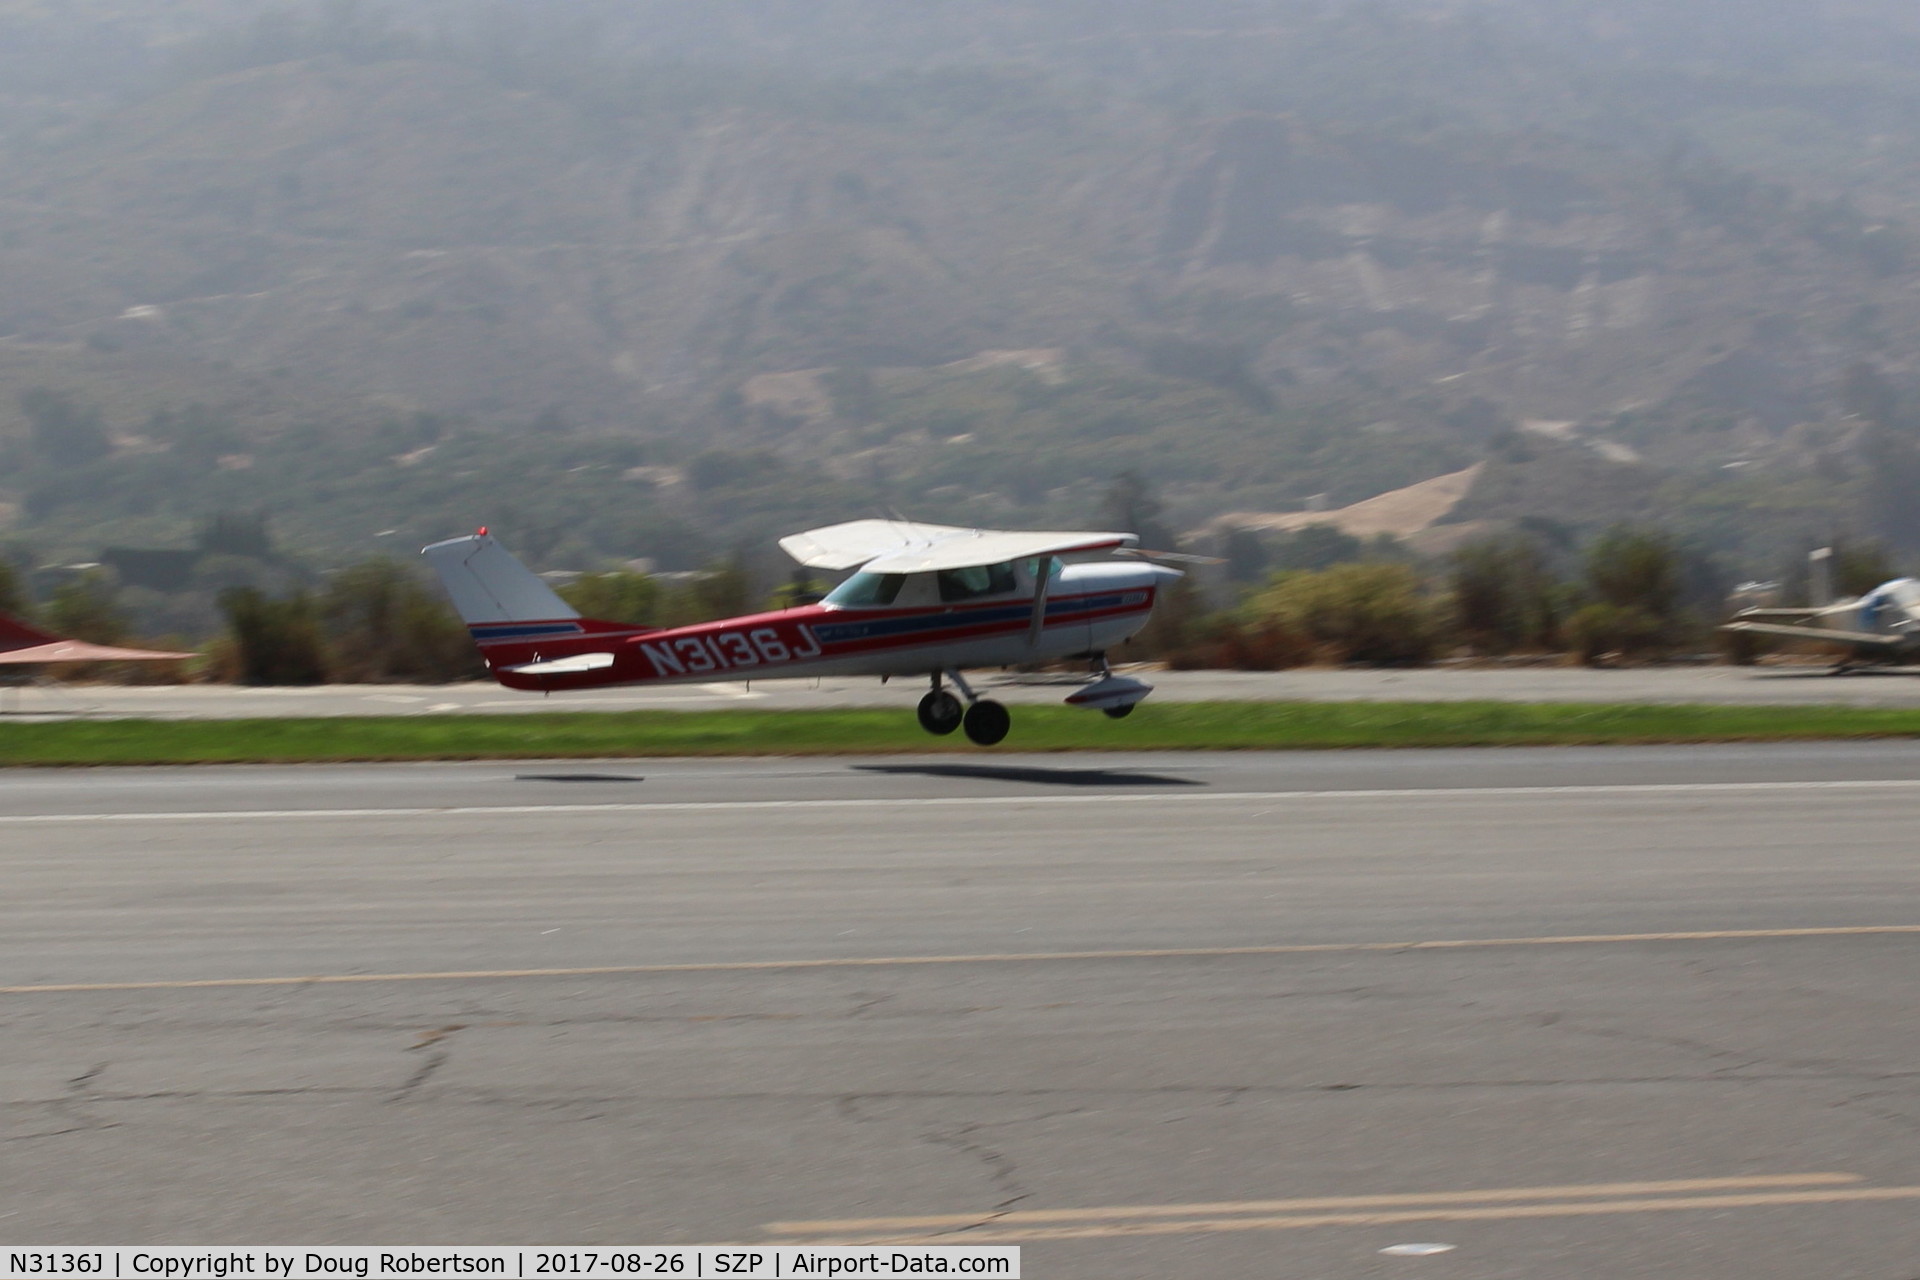 N3136J, 1966 Cessna 150G C/N 15065836, 1966 Cessna 150G, Continental O-200 100 Hp, takeoff climb Rwy 22